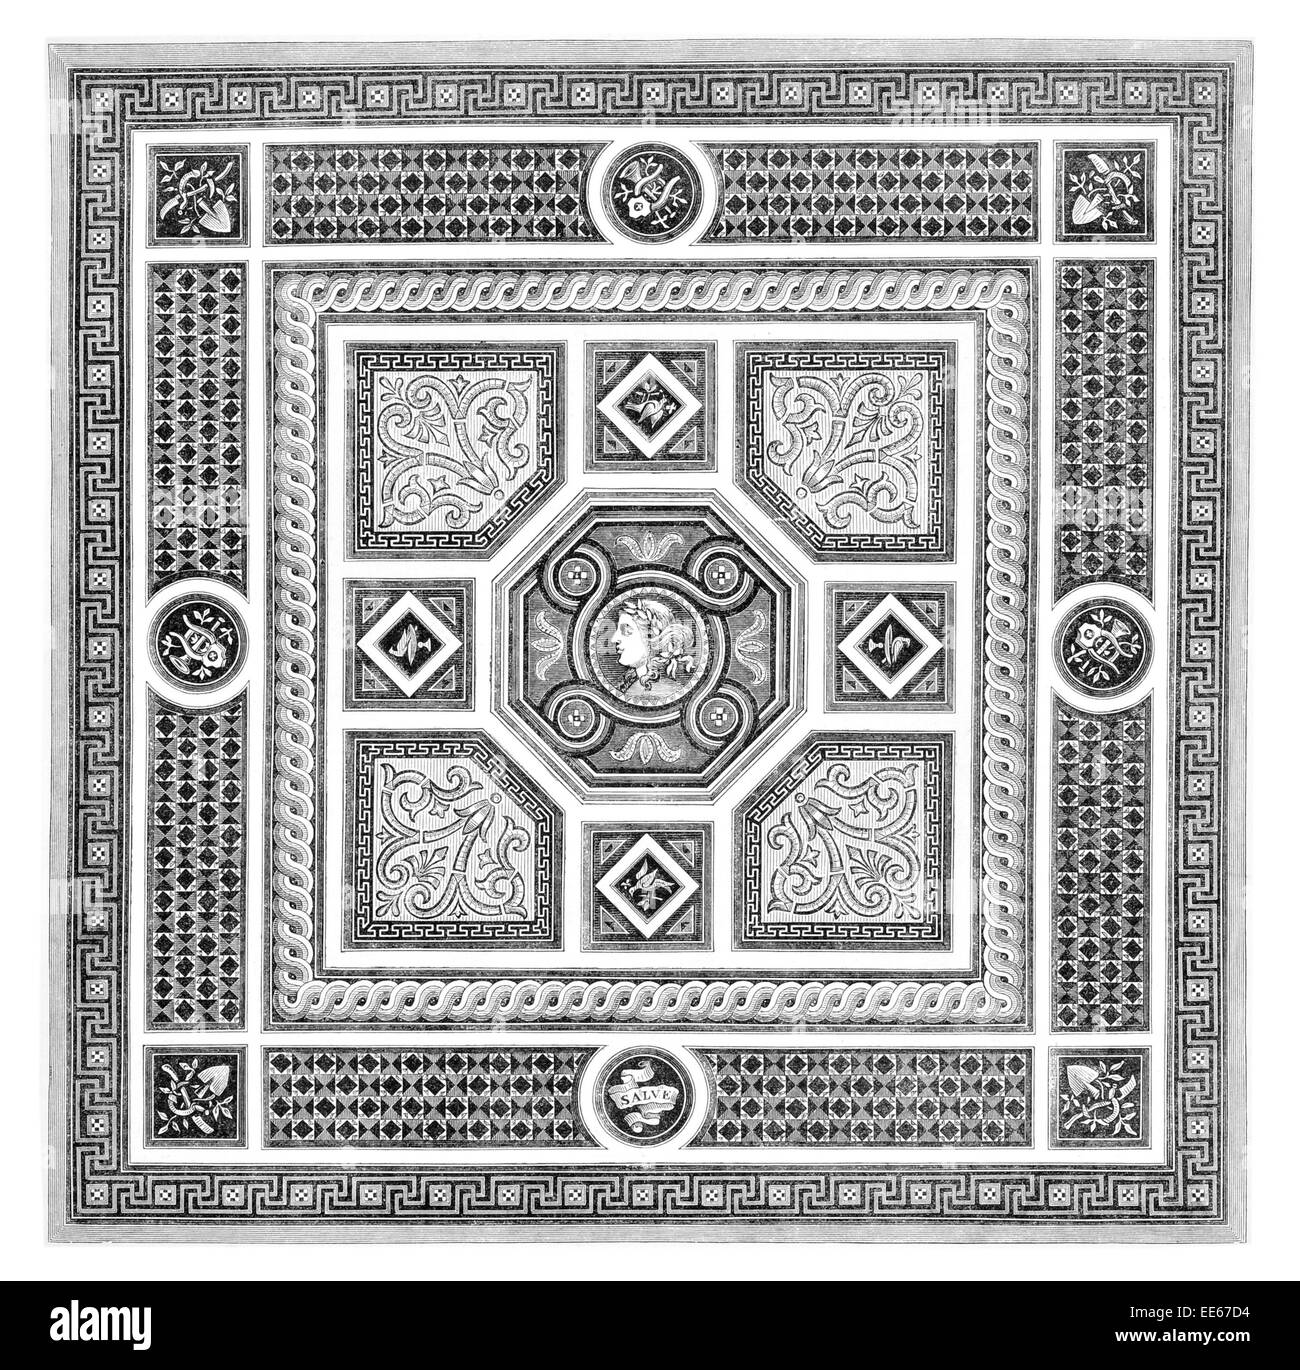 mosaic pavement Messrs Minton Stoke on Trent  tesser tile tiles tiled floor roman Greek mosaics octagonal panel guilloche border Stock Photo